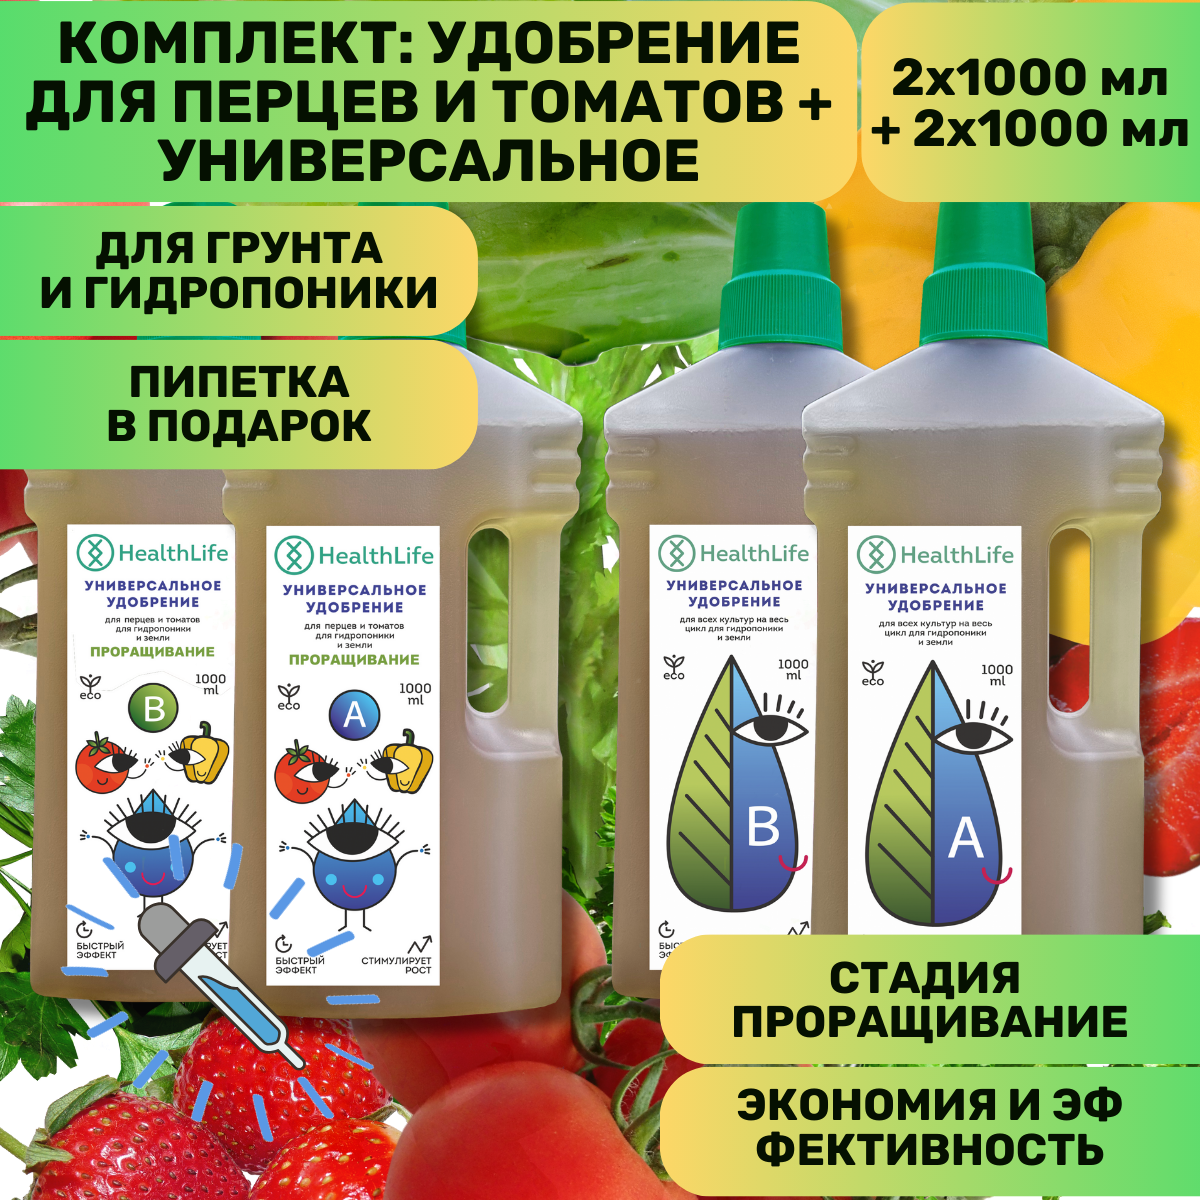 Комплект HealthLife Универсальное удобрение А+В (2х1000 мл) и для Перцев и томатов А+В стадия Проращивания (2х1000 мл) для гидропоники и грунта увеличивает урожайность